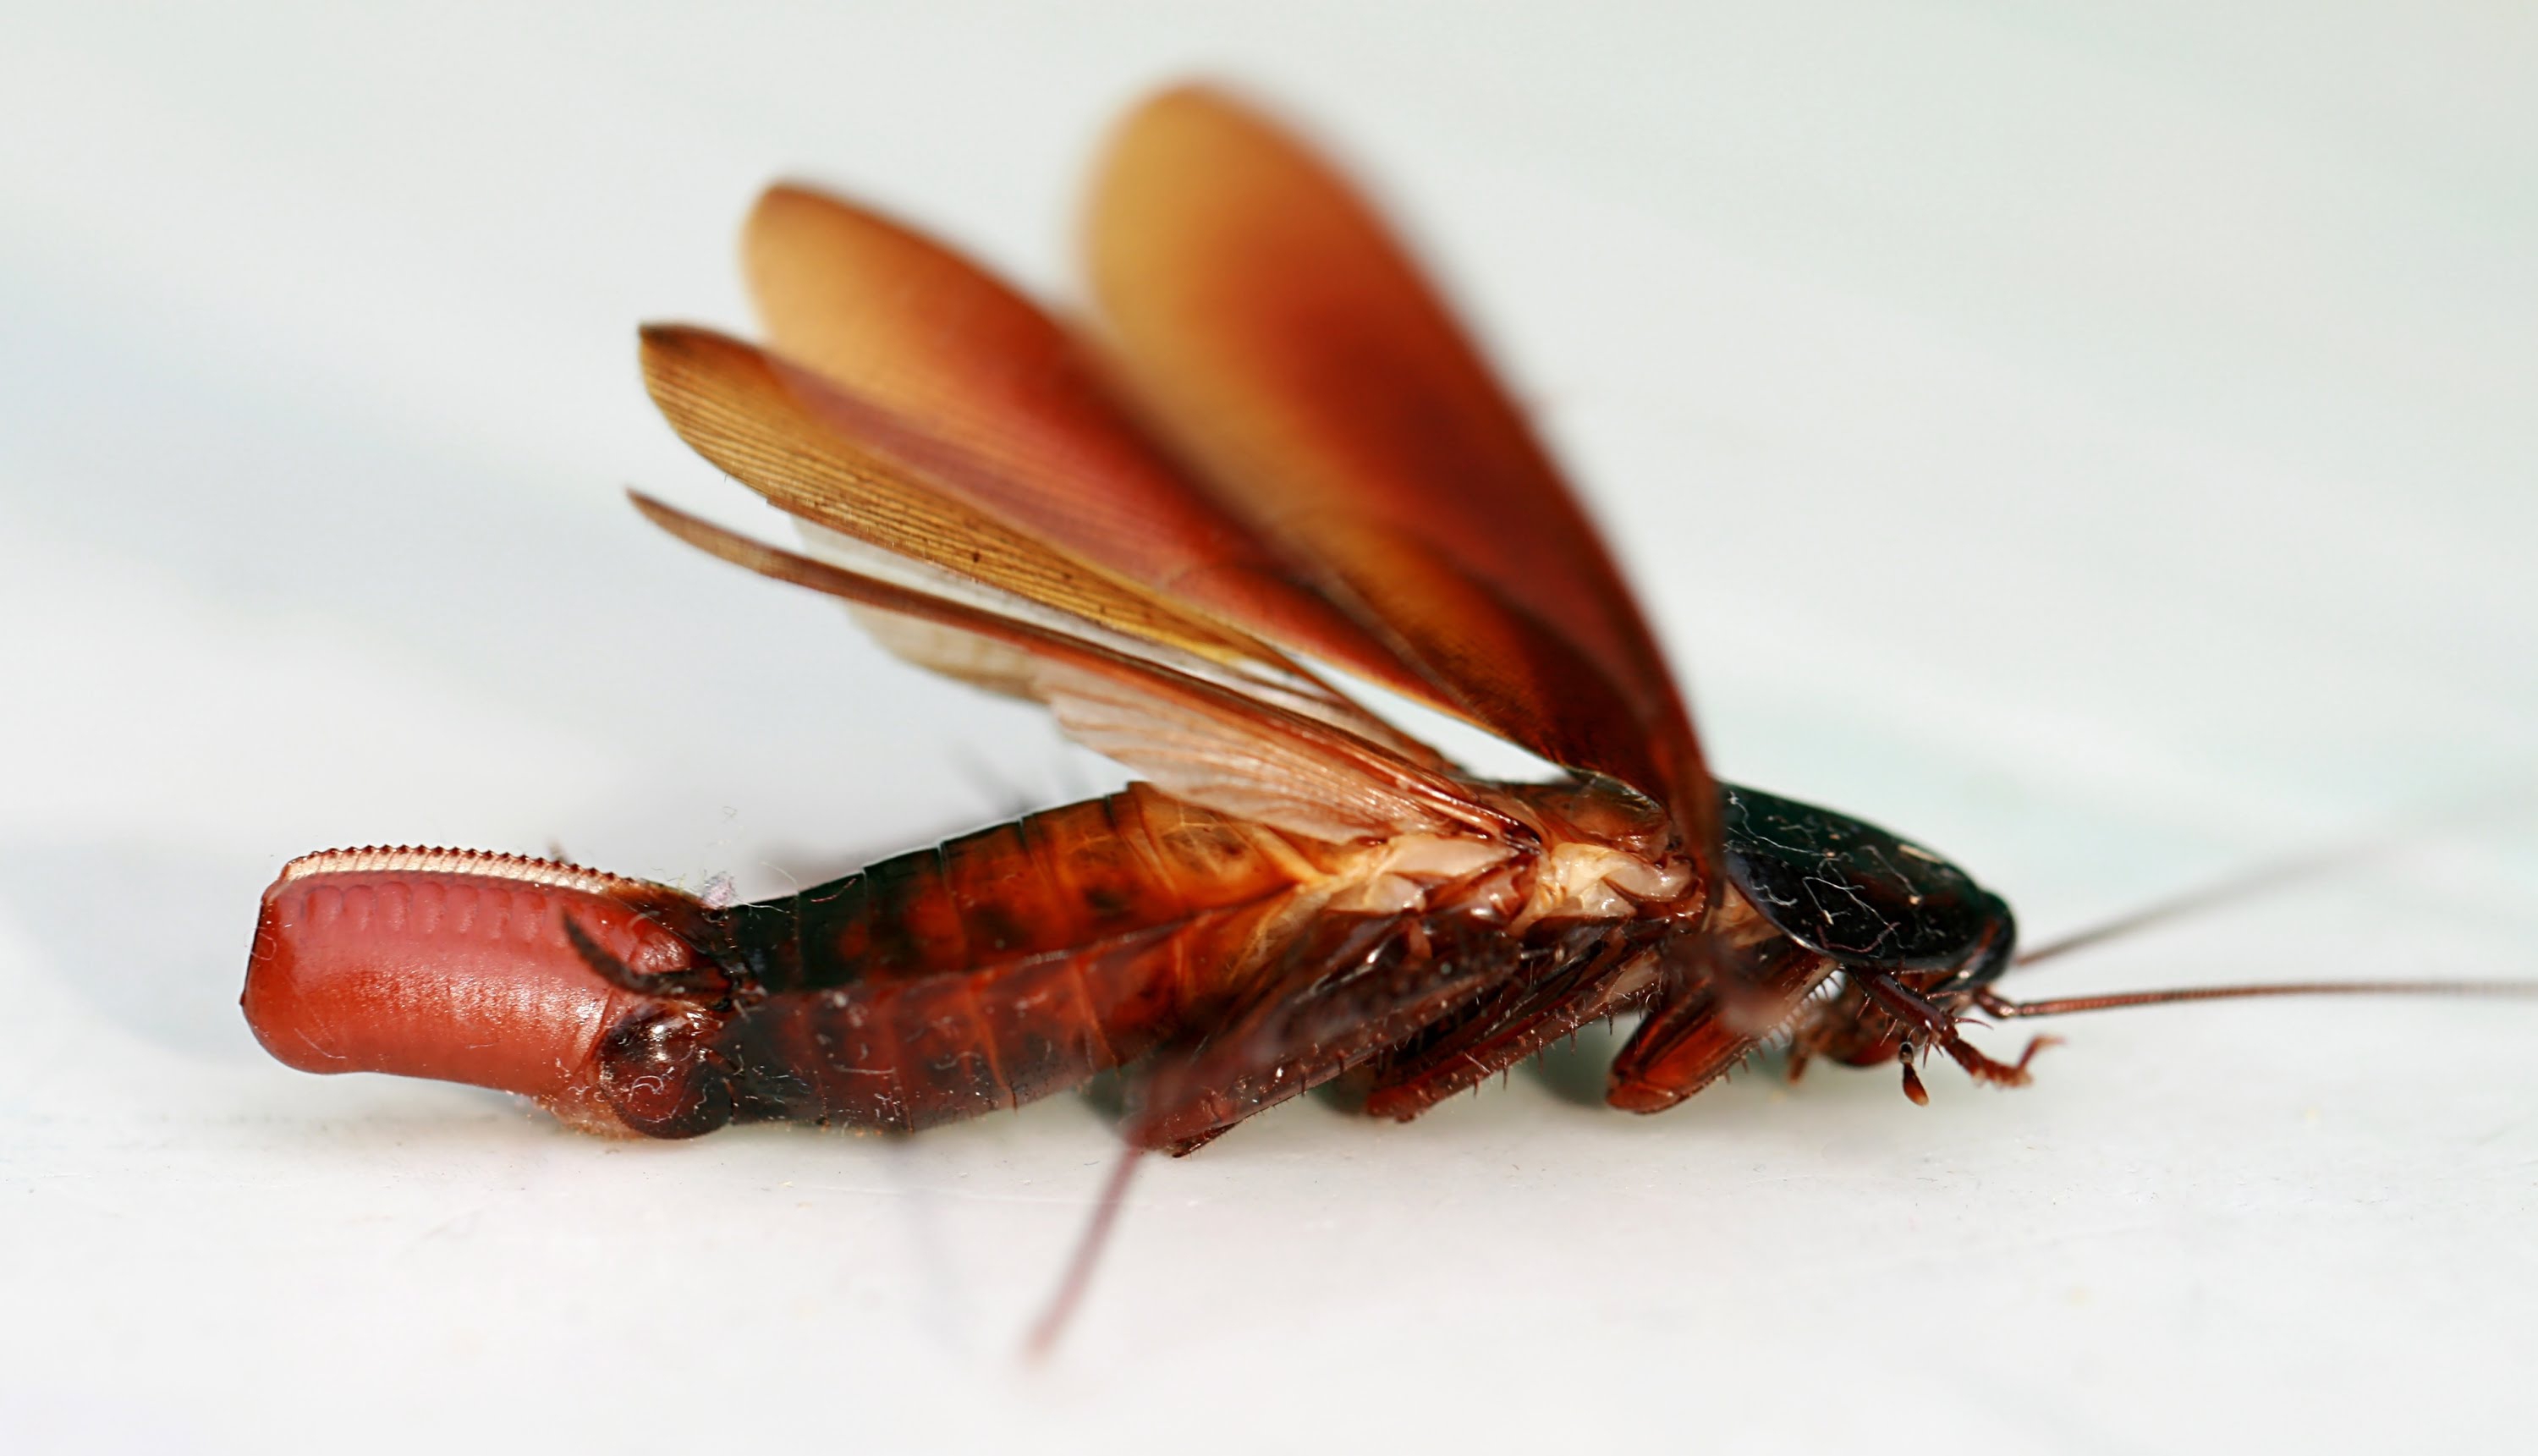 kakerlake tapete,insekt,pest,wirbellos,geflügelte netzinsekten,membran geflügeltes insekt